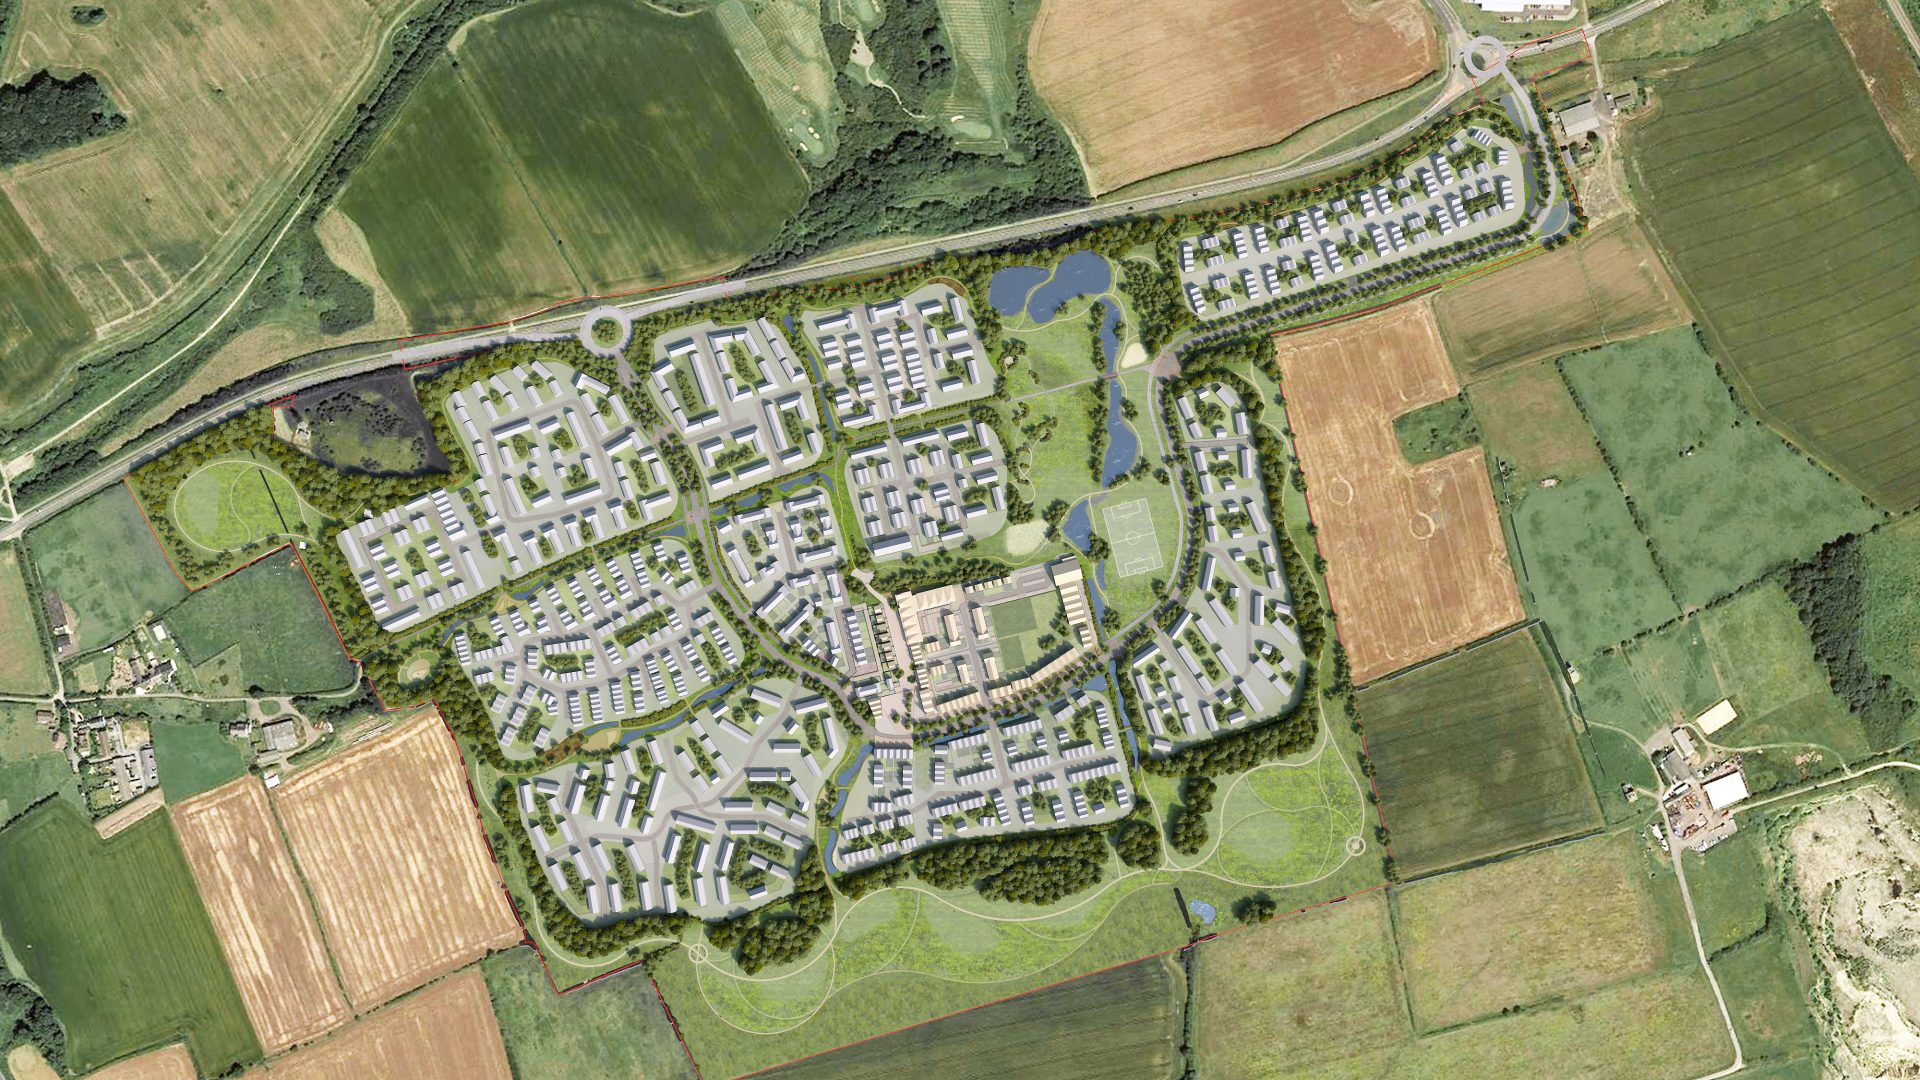 The proposed Seaham Garden Village development